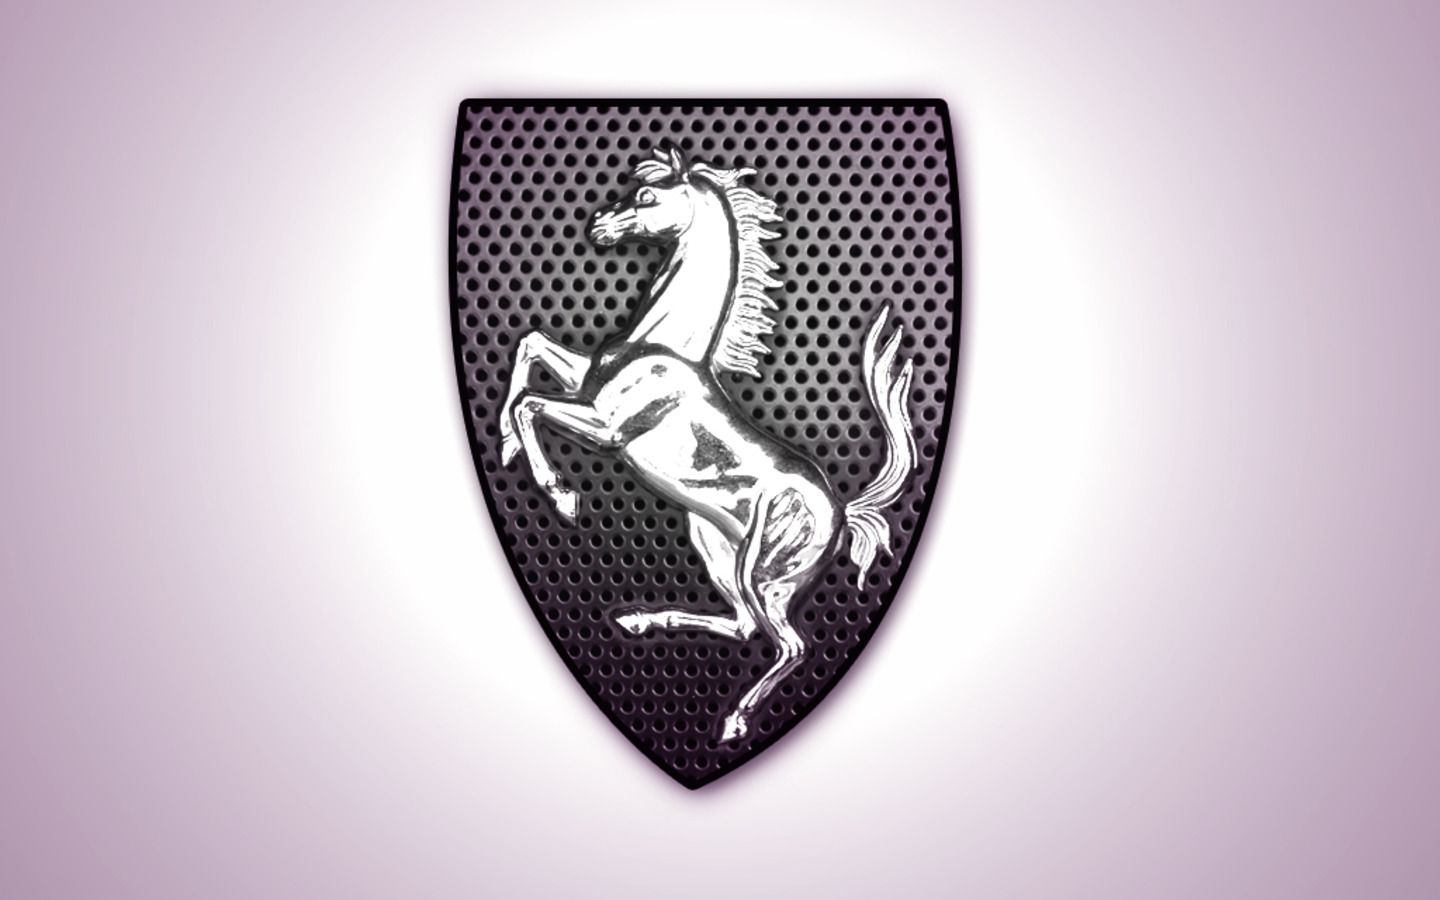 ferrari wallpaper horse. Logo wallpaper hd, Wallpaper designs for walls, Ferrari logo